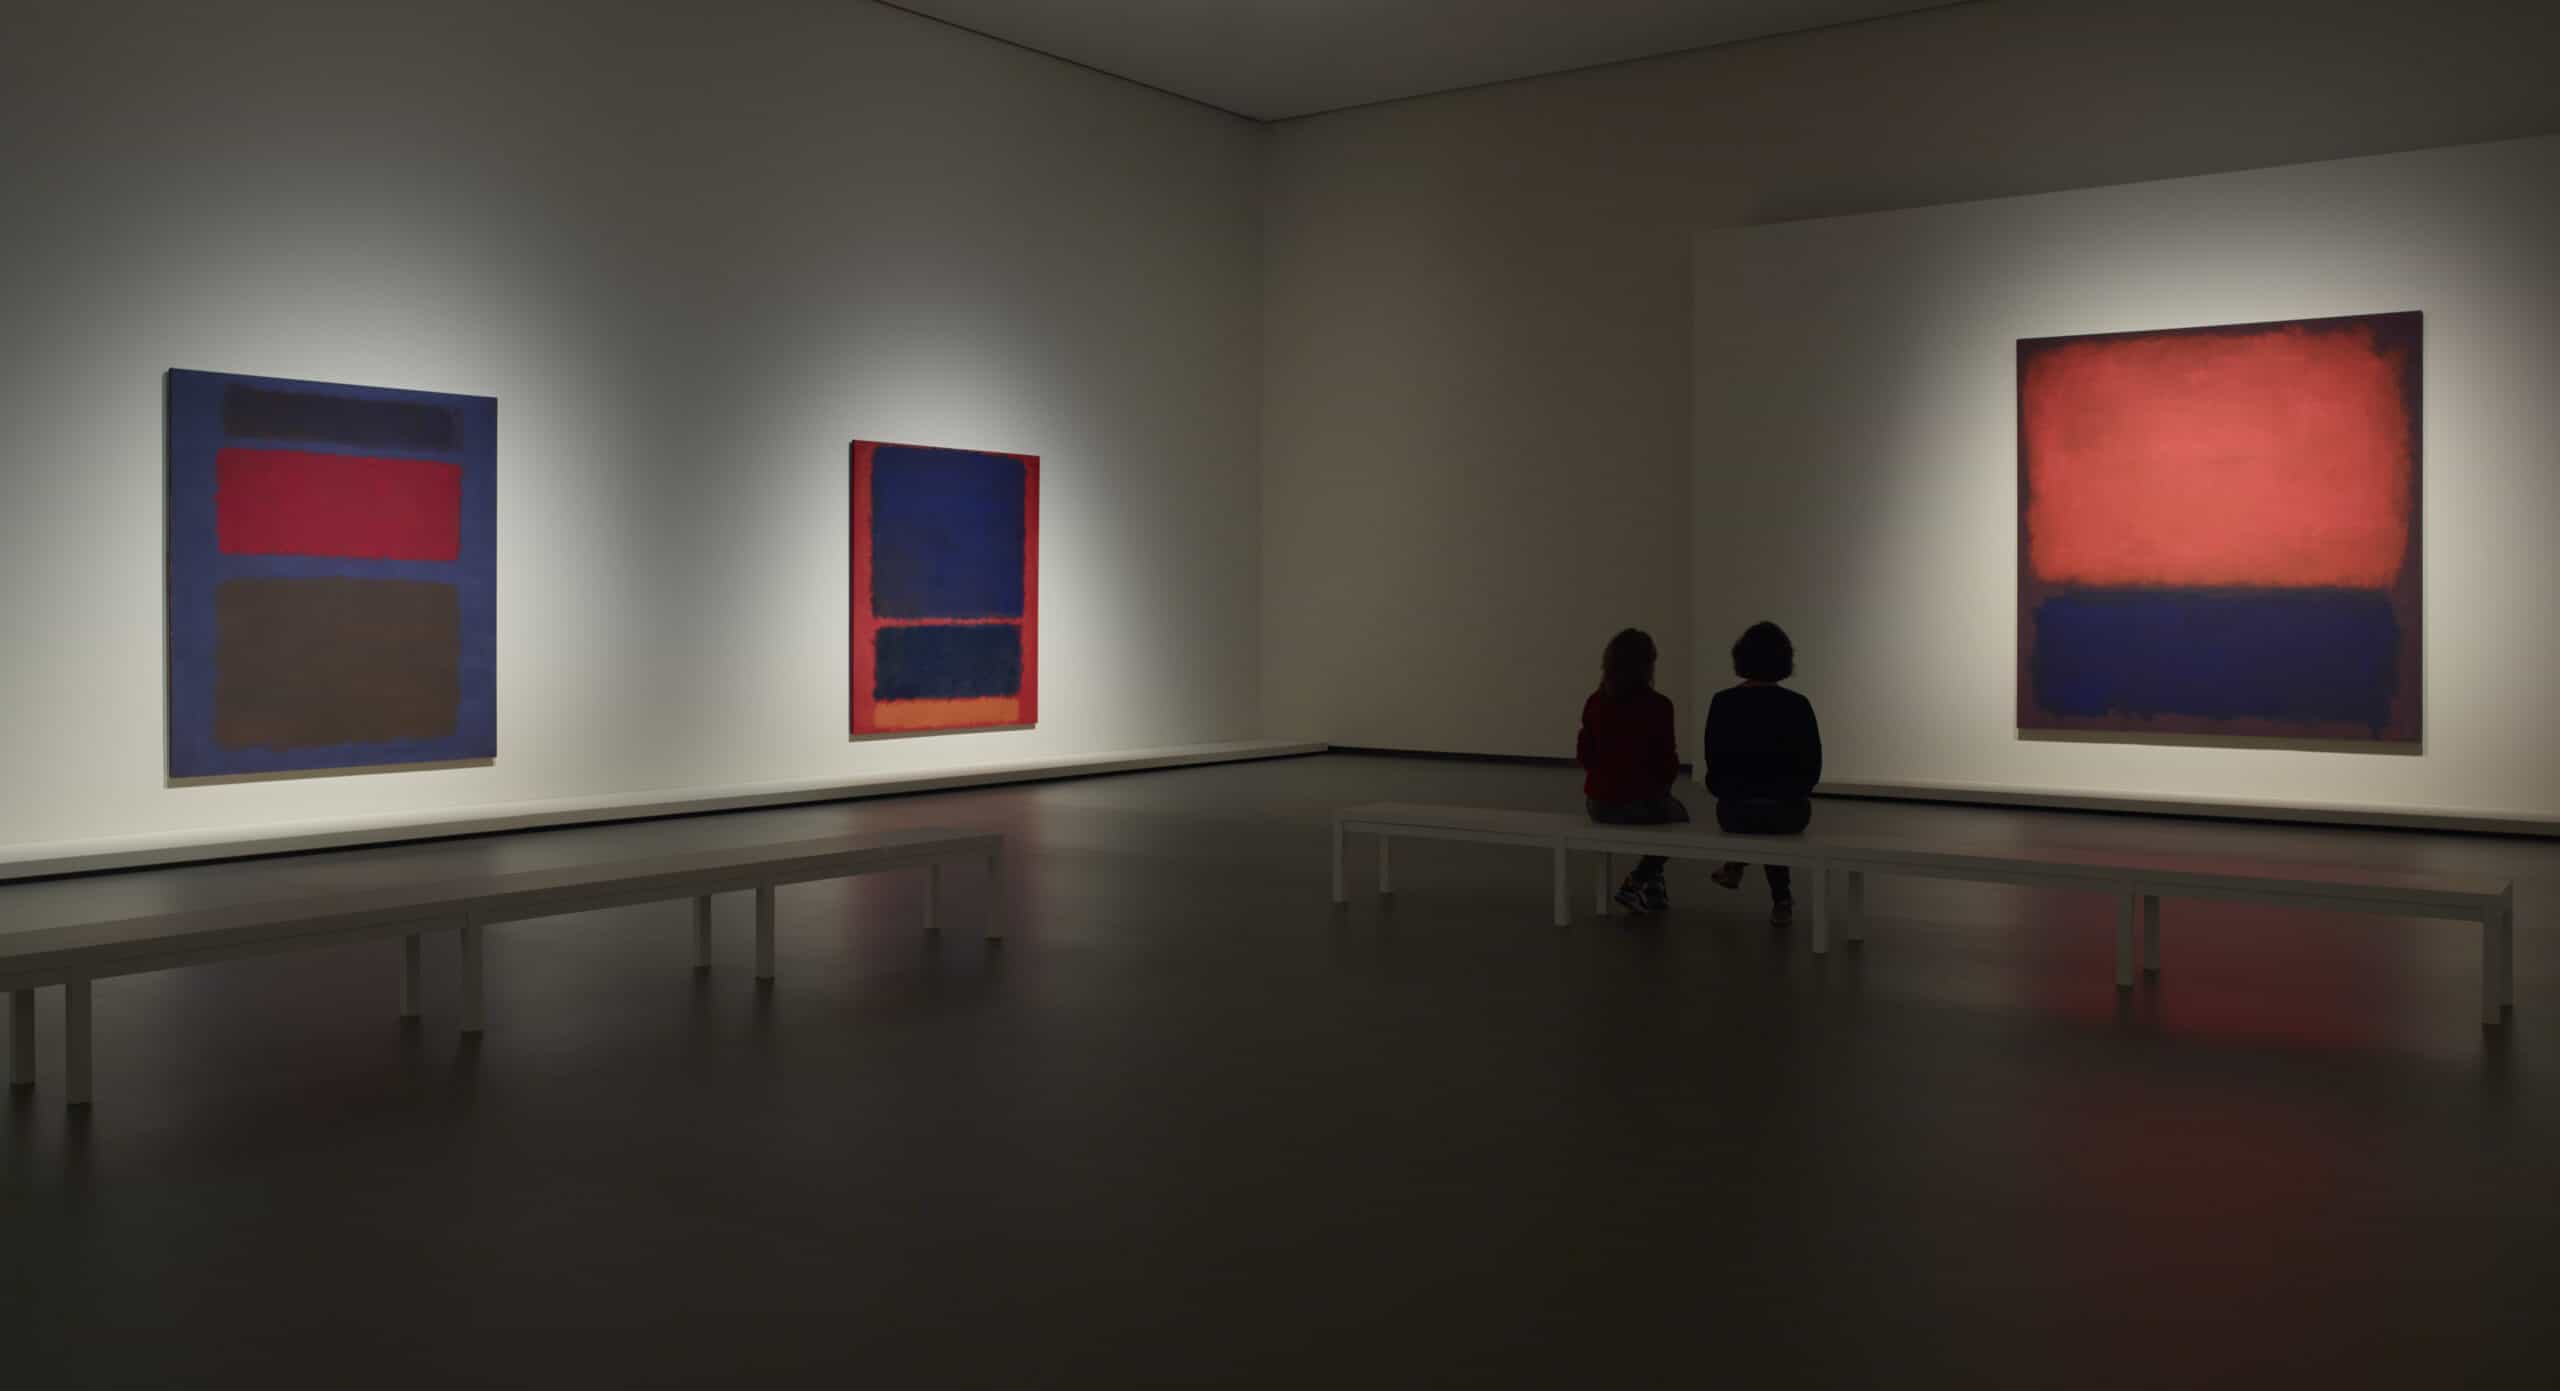 galerieruimte met drie werken van Mark Rothko en twee mensen die het werk aanschouwen